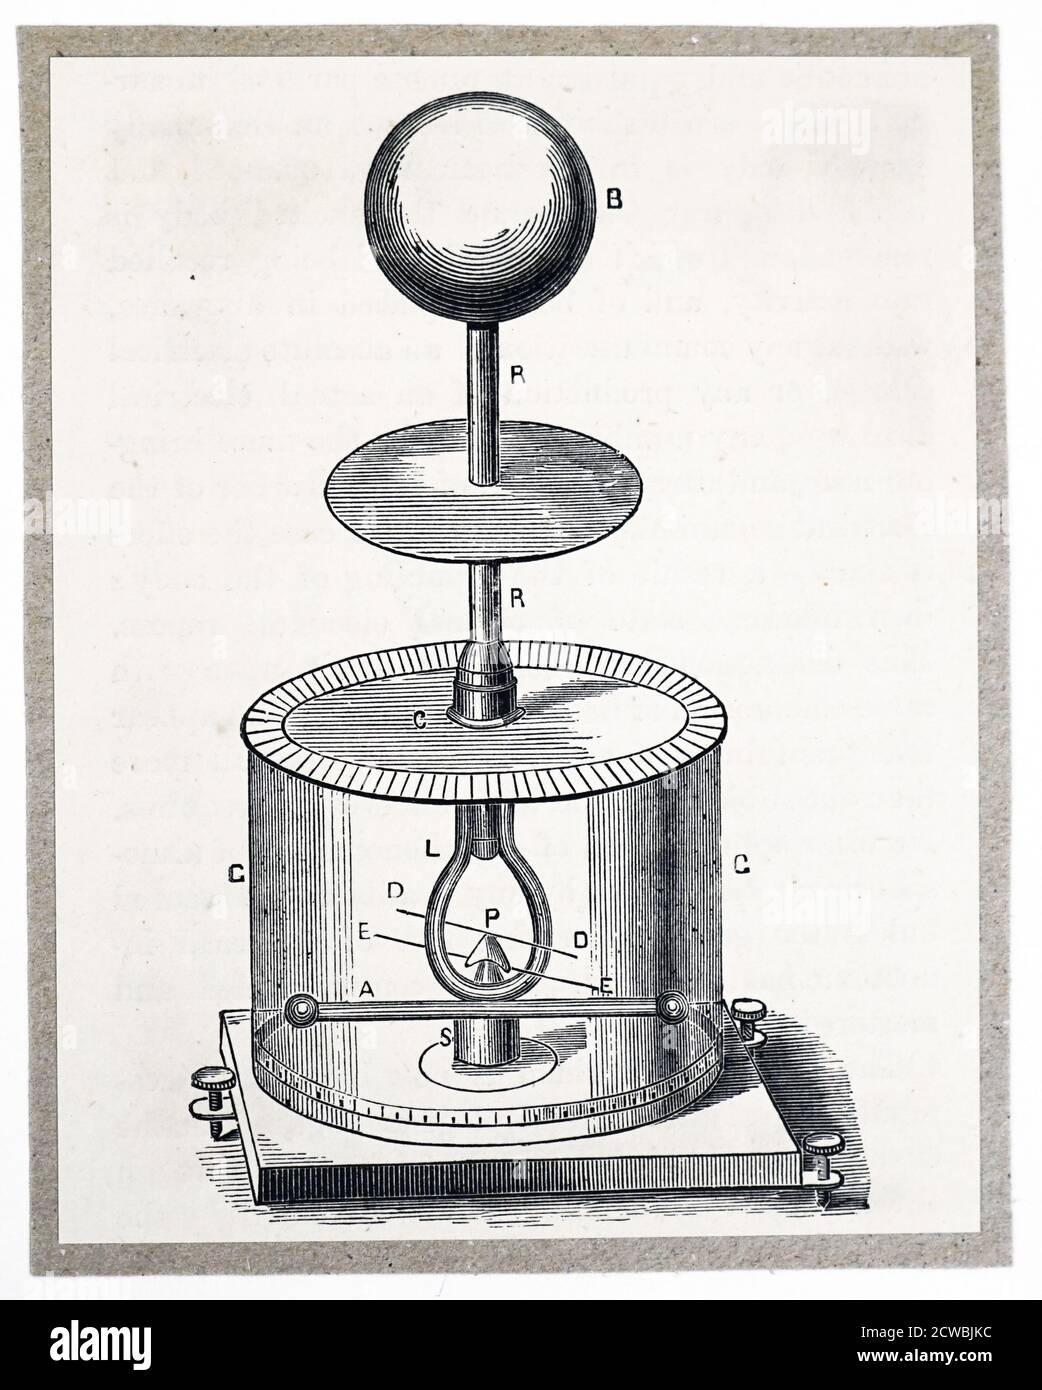 Incisione raffigurante un elettrometro Peltier con barra di rame che attraversa orizzontalmente. Foto Stock